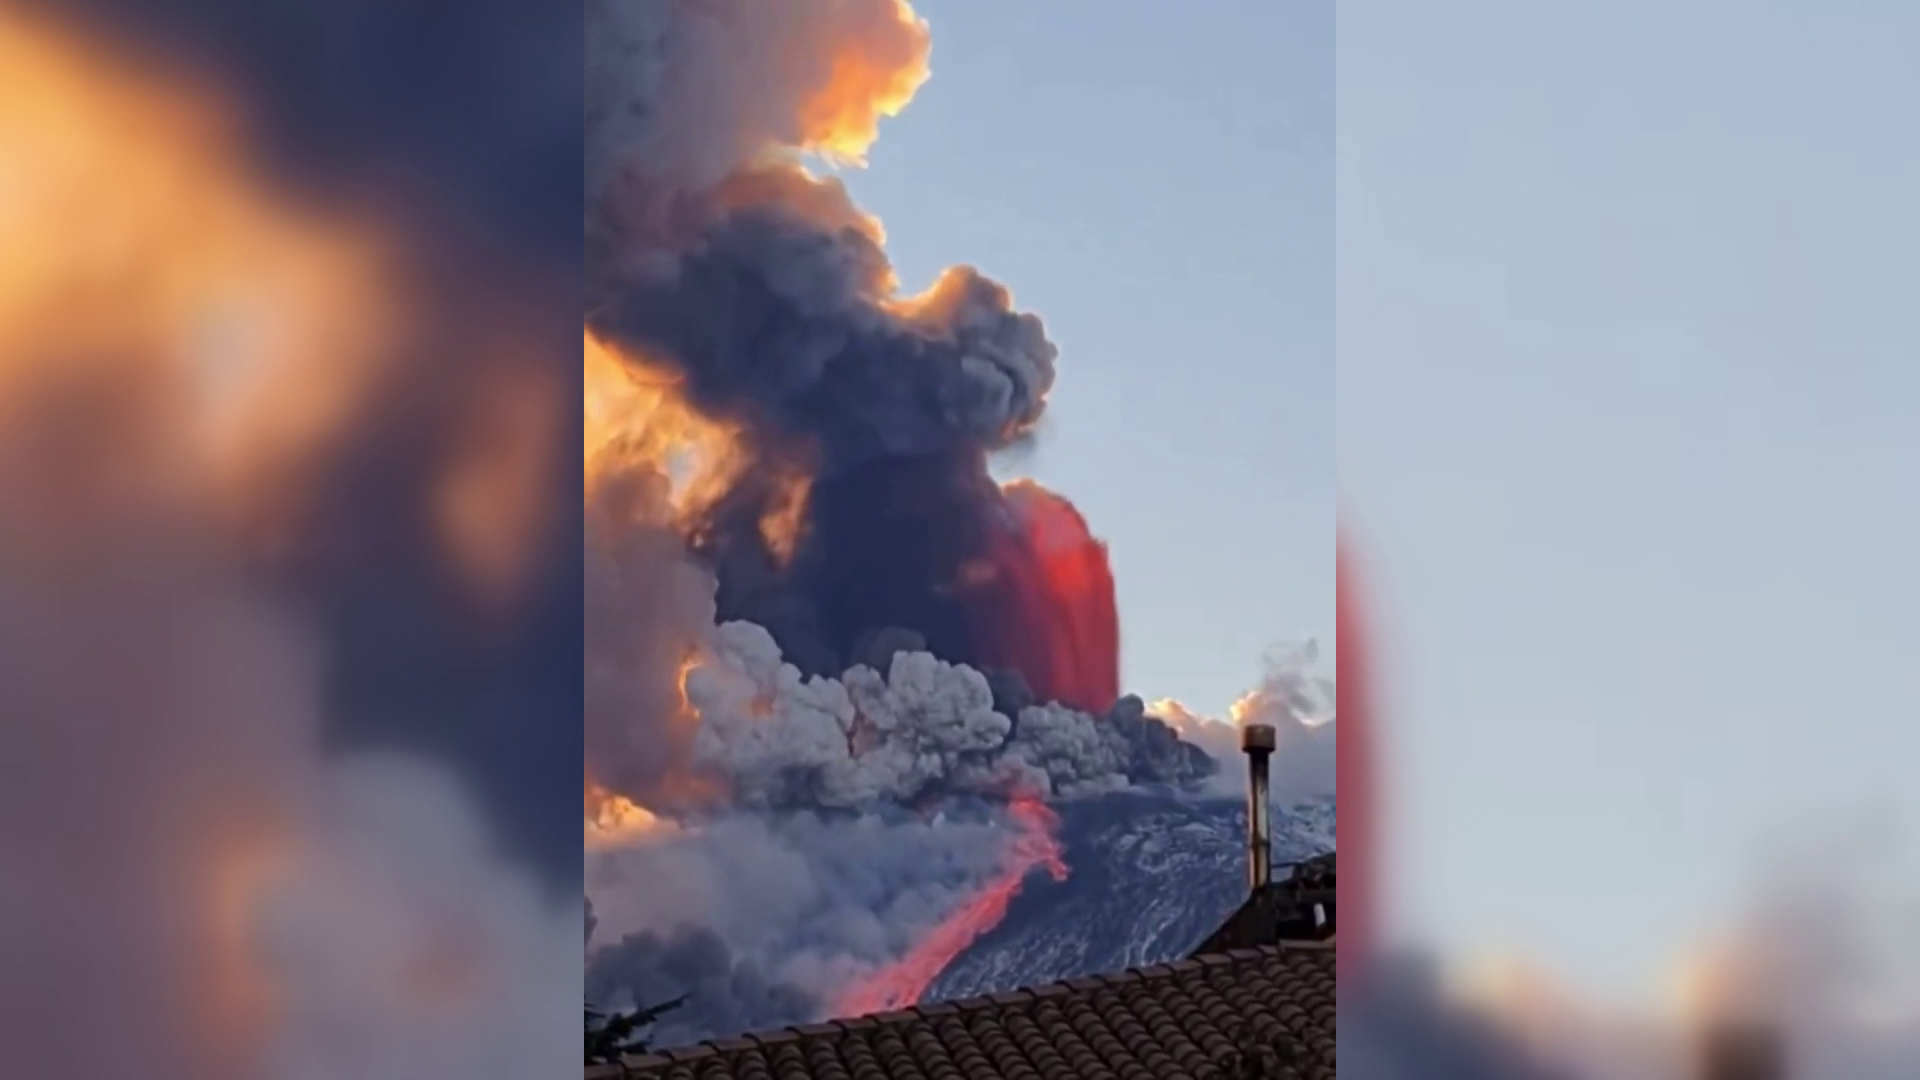 Kitört az Etna